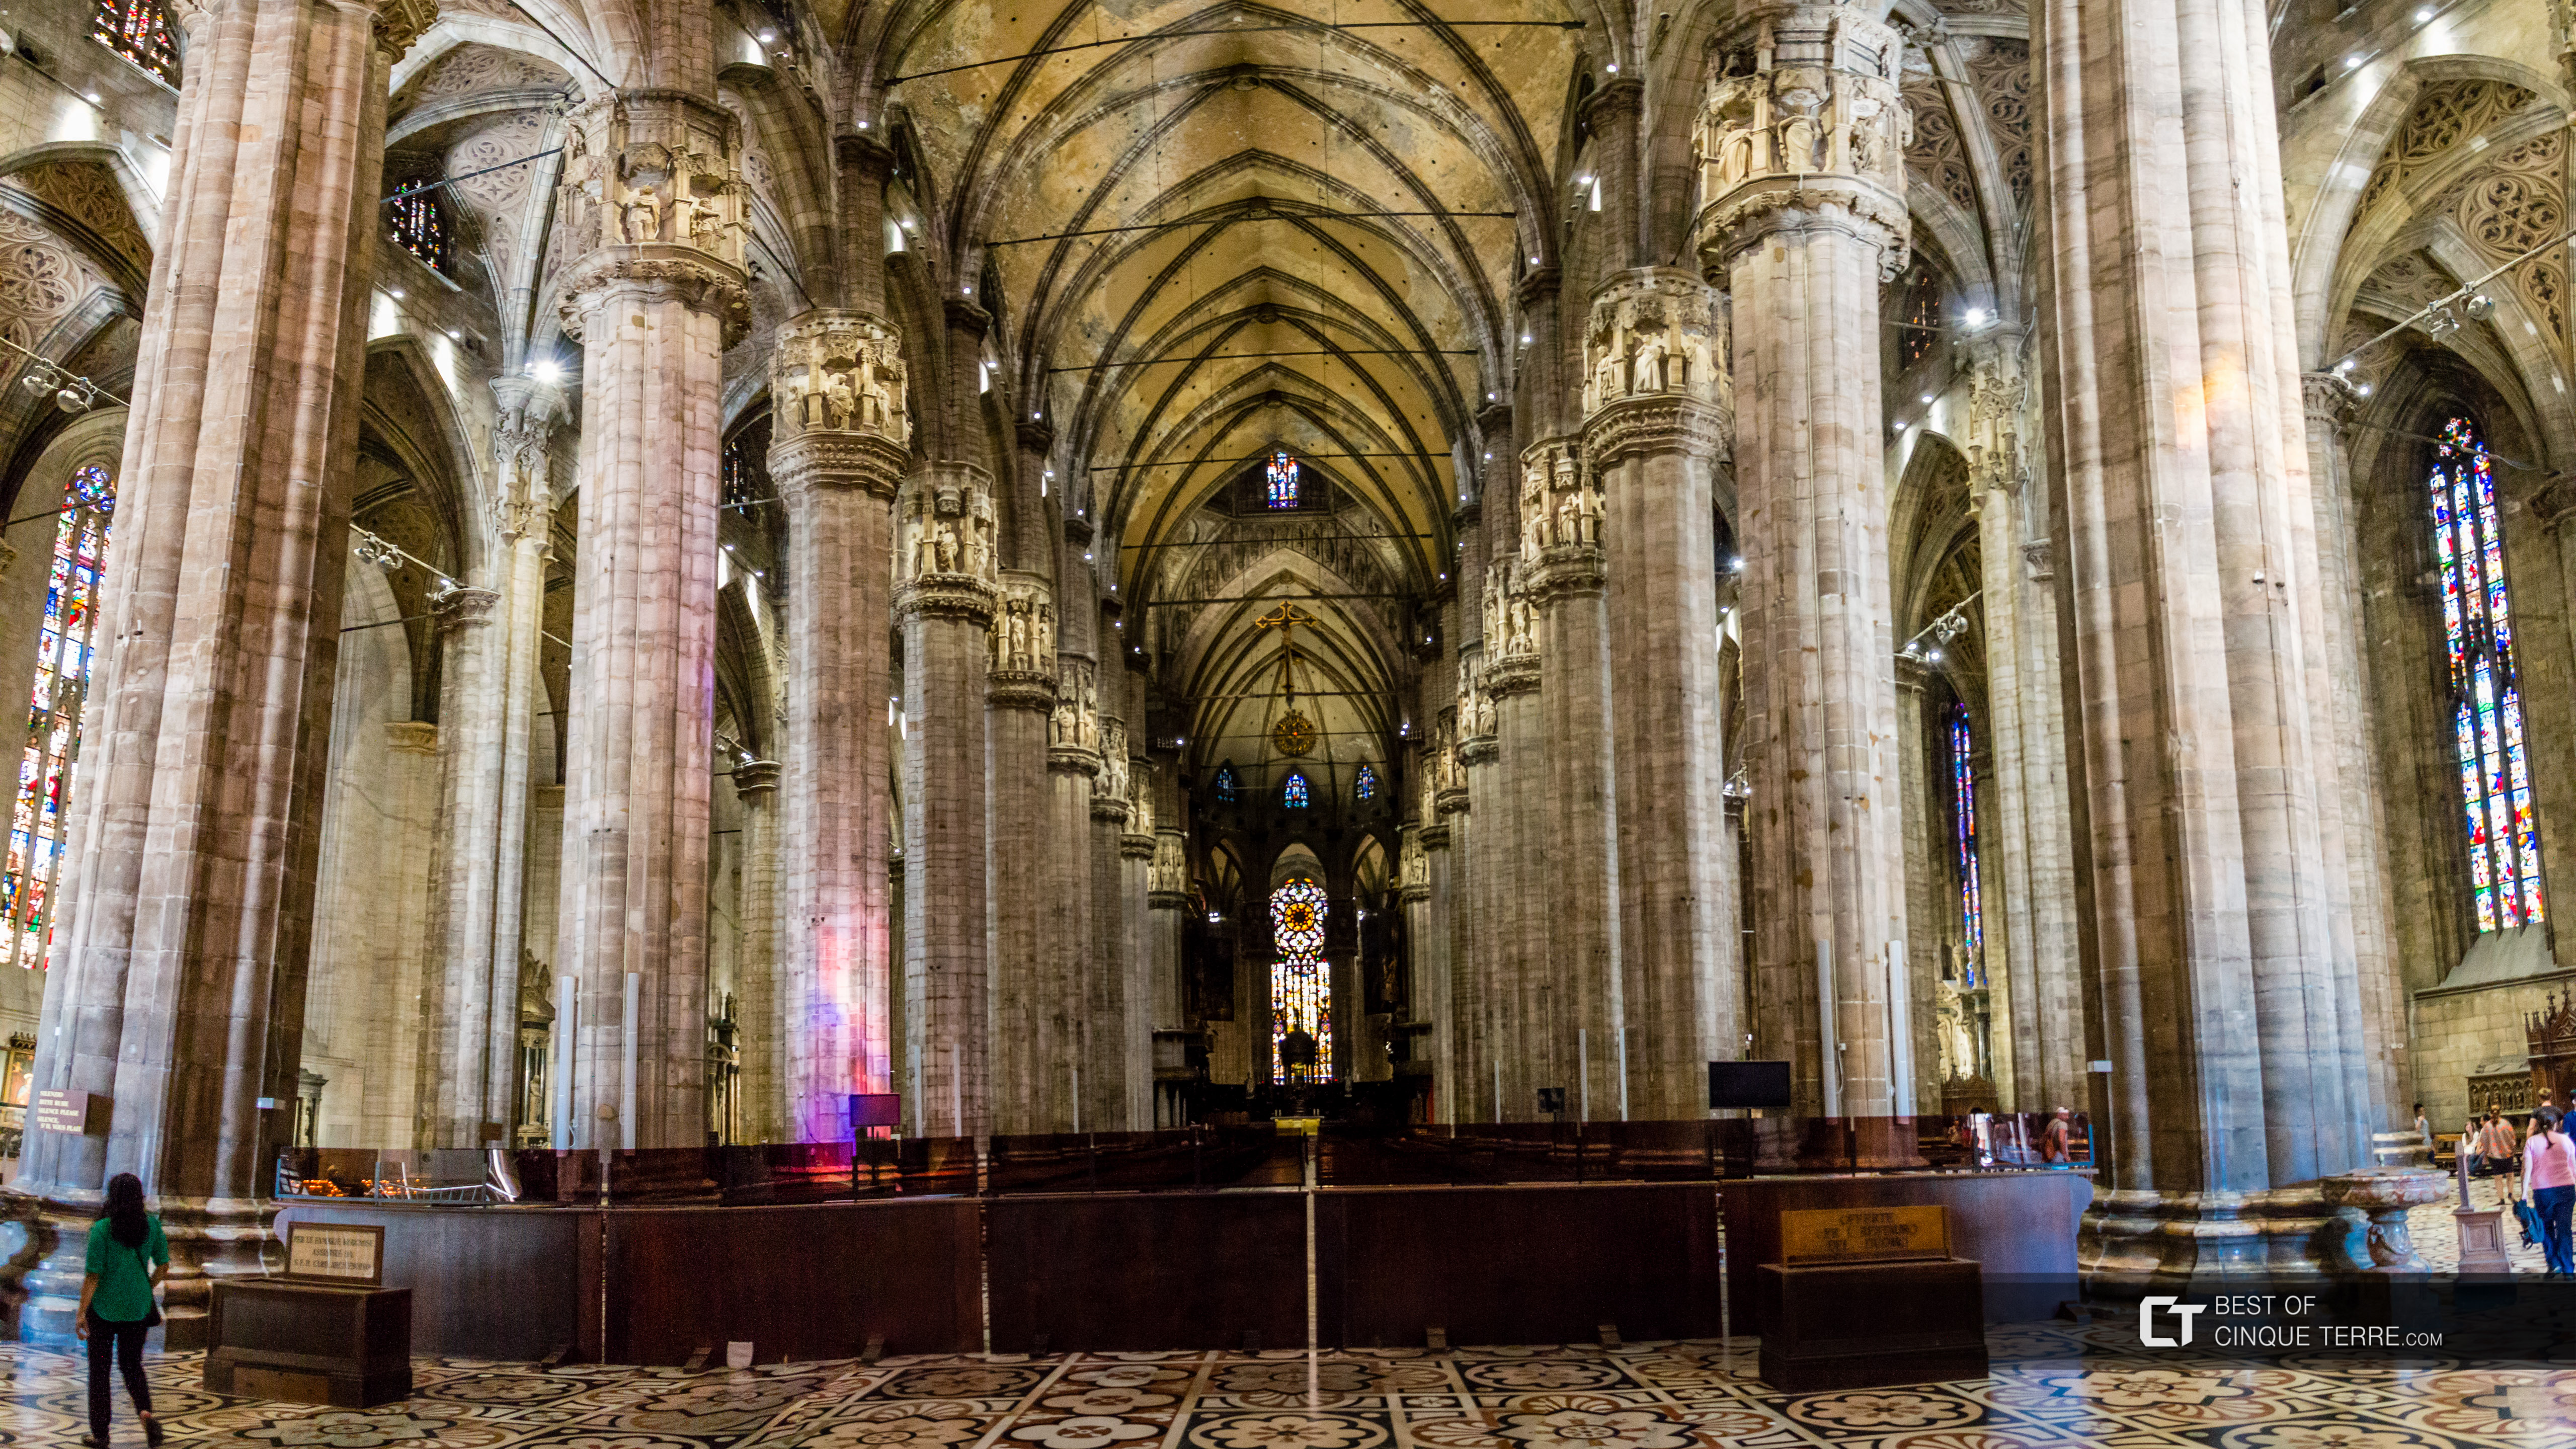 Wnętrze katedry, Mediolan, Włochy